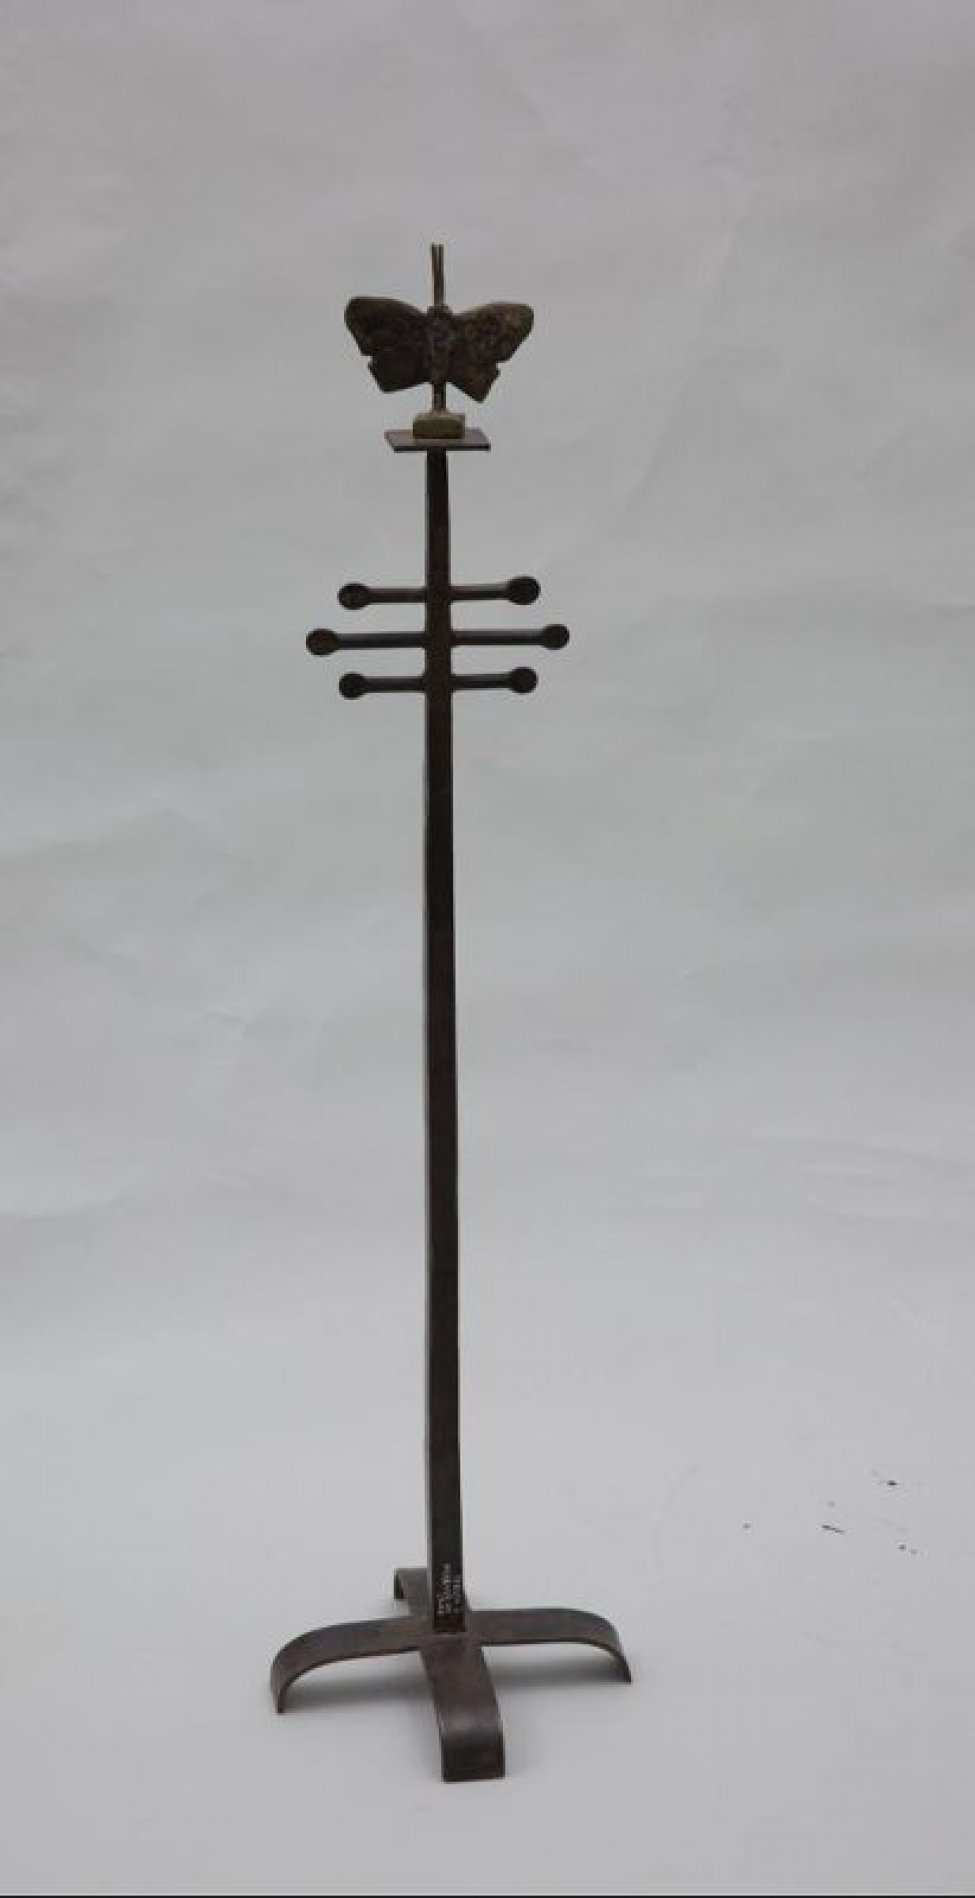 На крестообразном основании на вертикальном стержне с подставкой изображена бабочка со смещением наискось с длинными усиками.